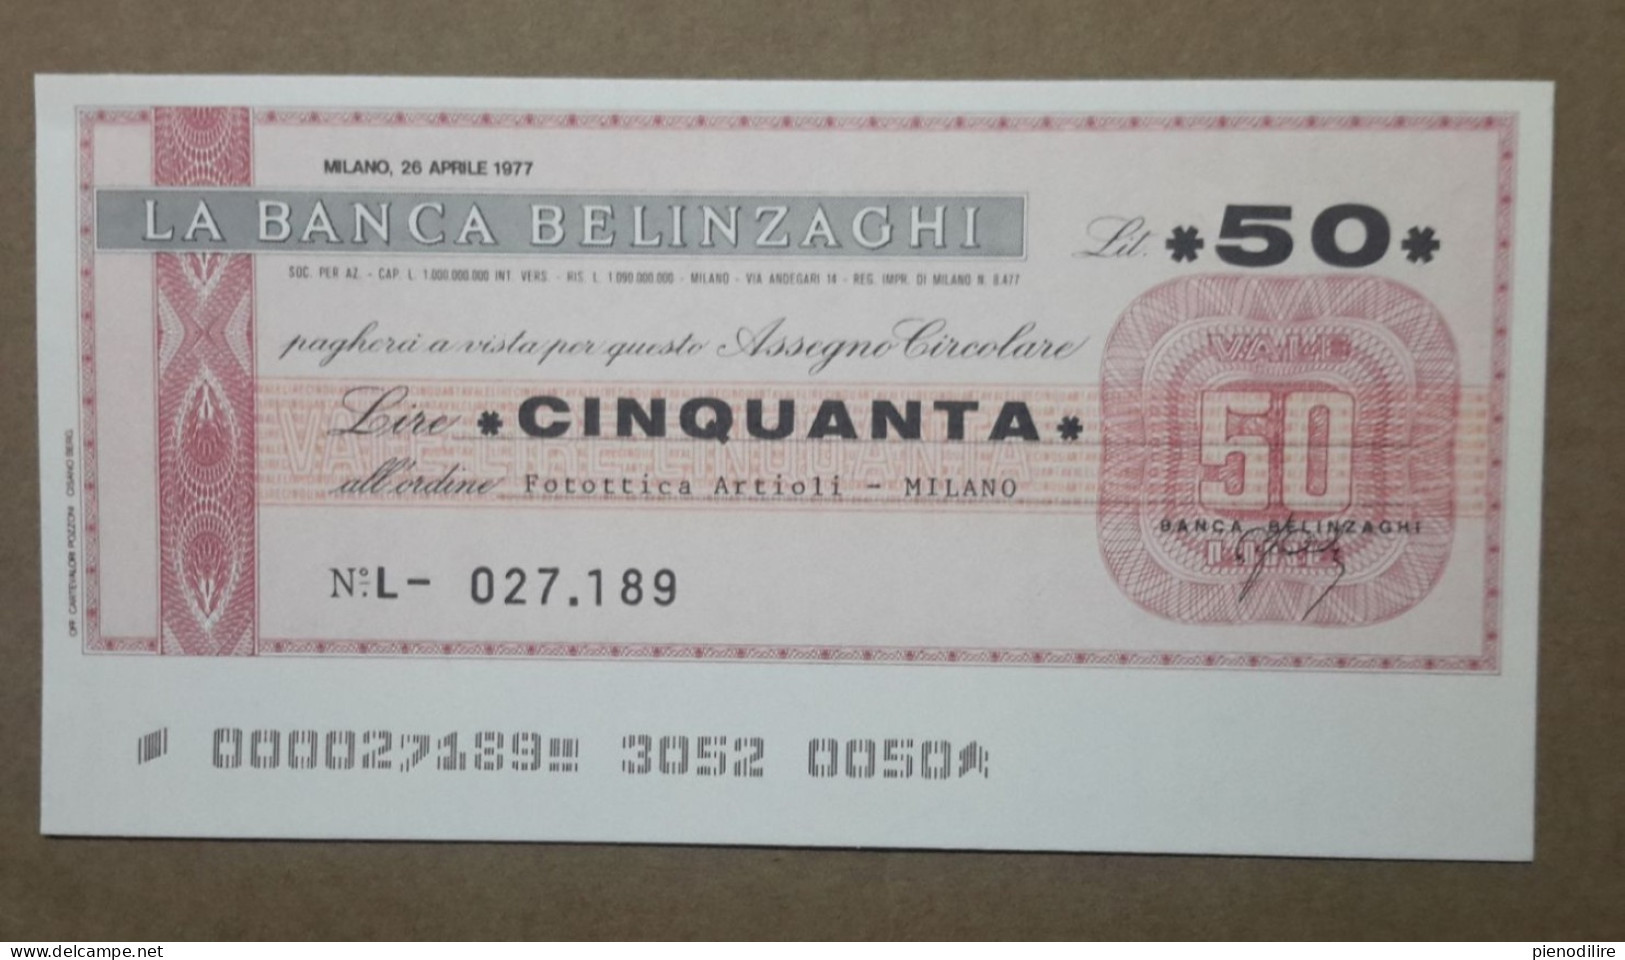 BANCA BELINZAGHI, 50 LIRE 26.04.1977 FOTOTTICA ARTIOLI MILANO (A1.80) - [10] Cheques En Mini-cheques